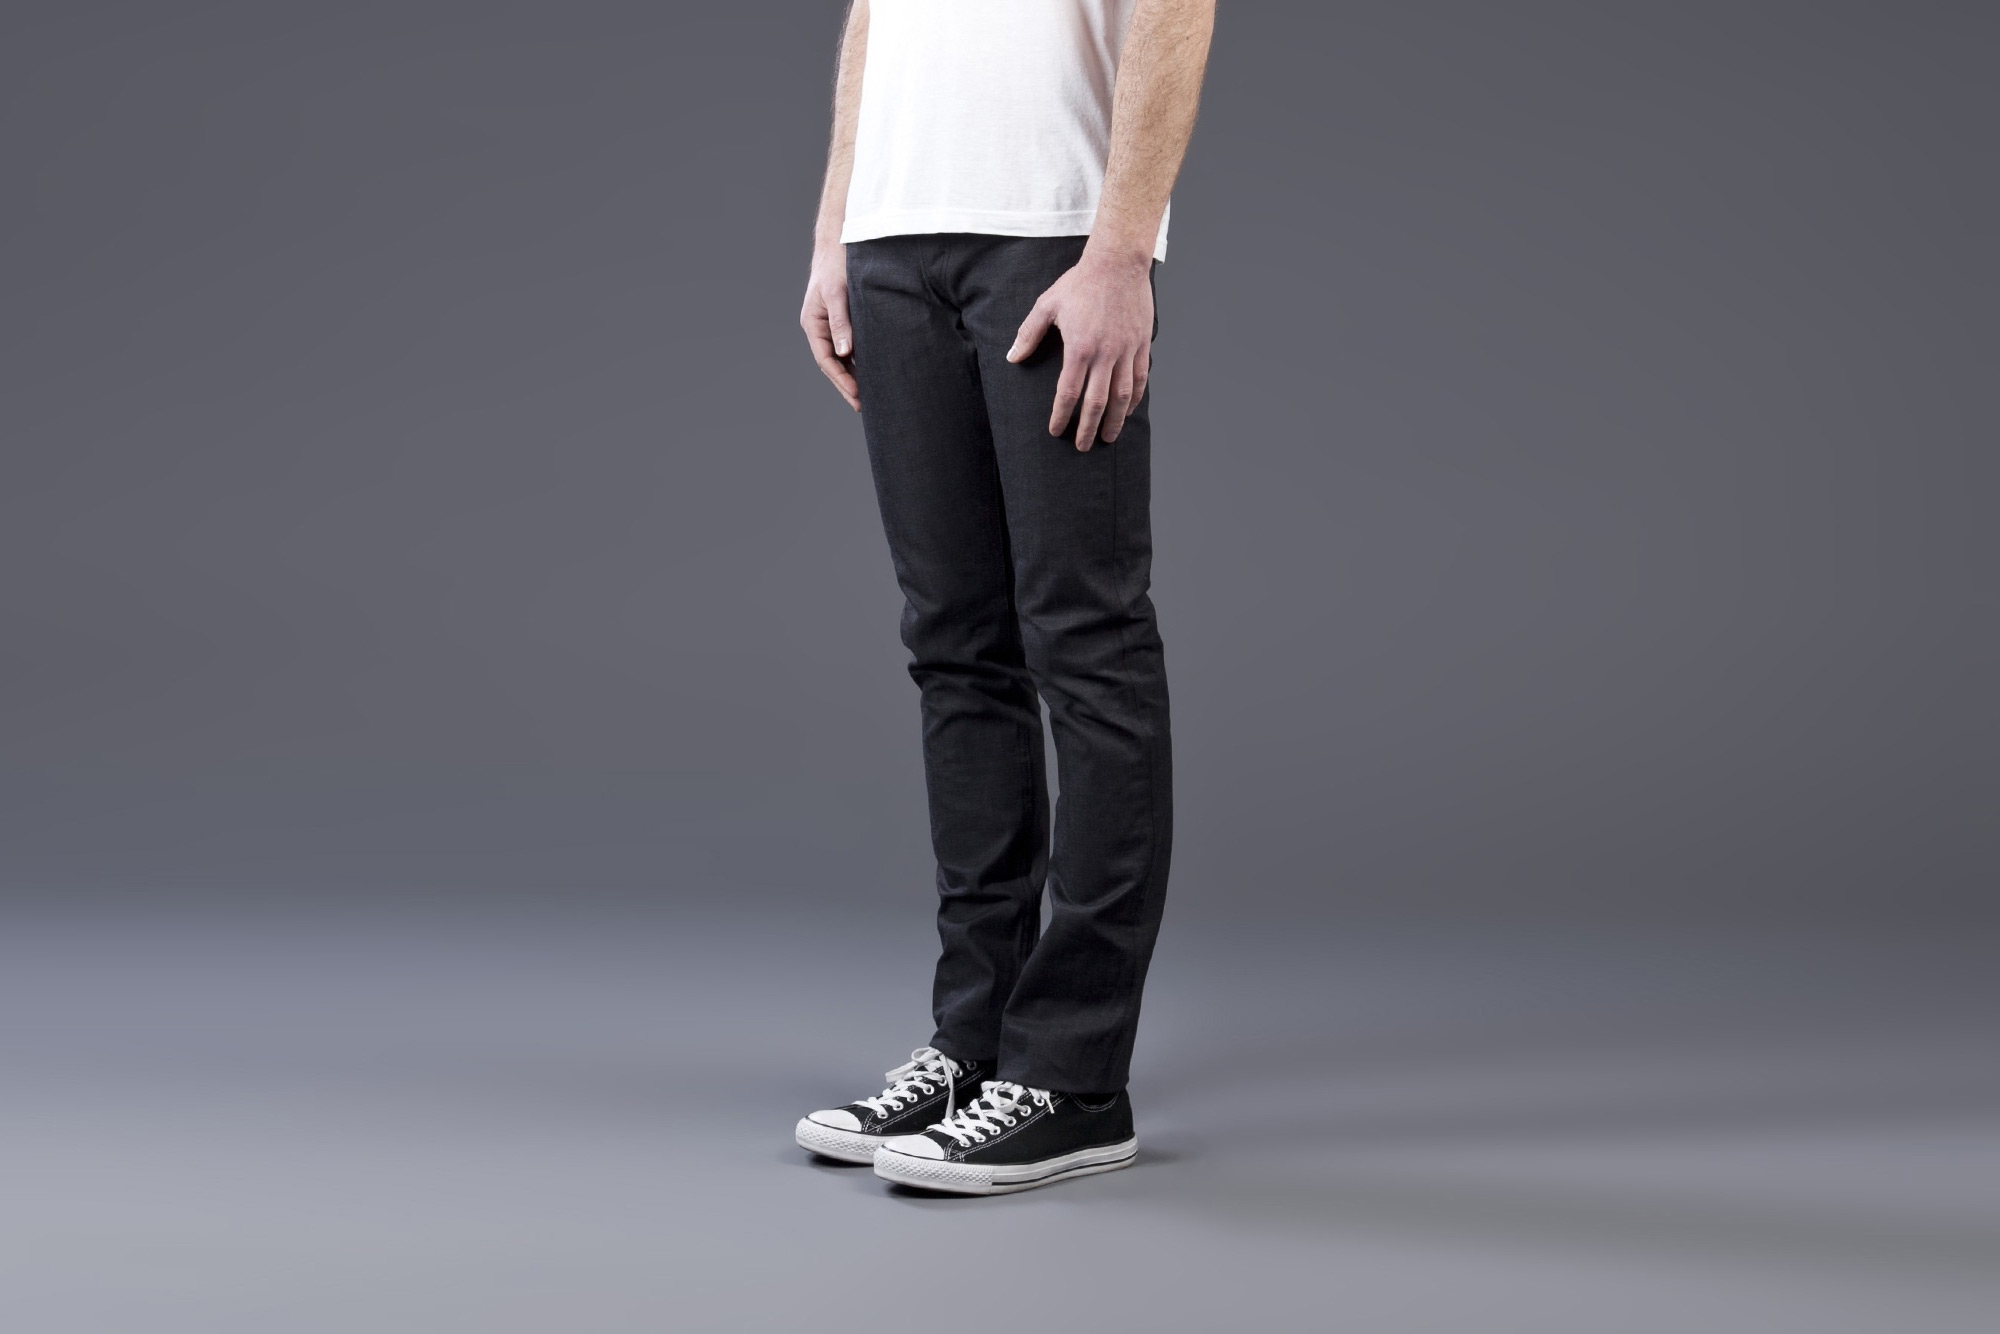 dark grey slim fit jeans mens